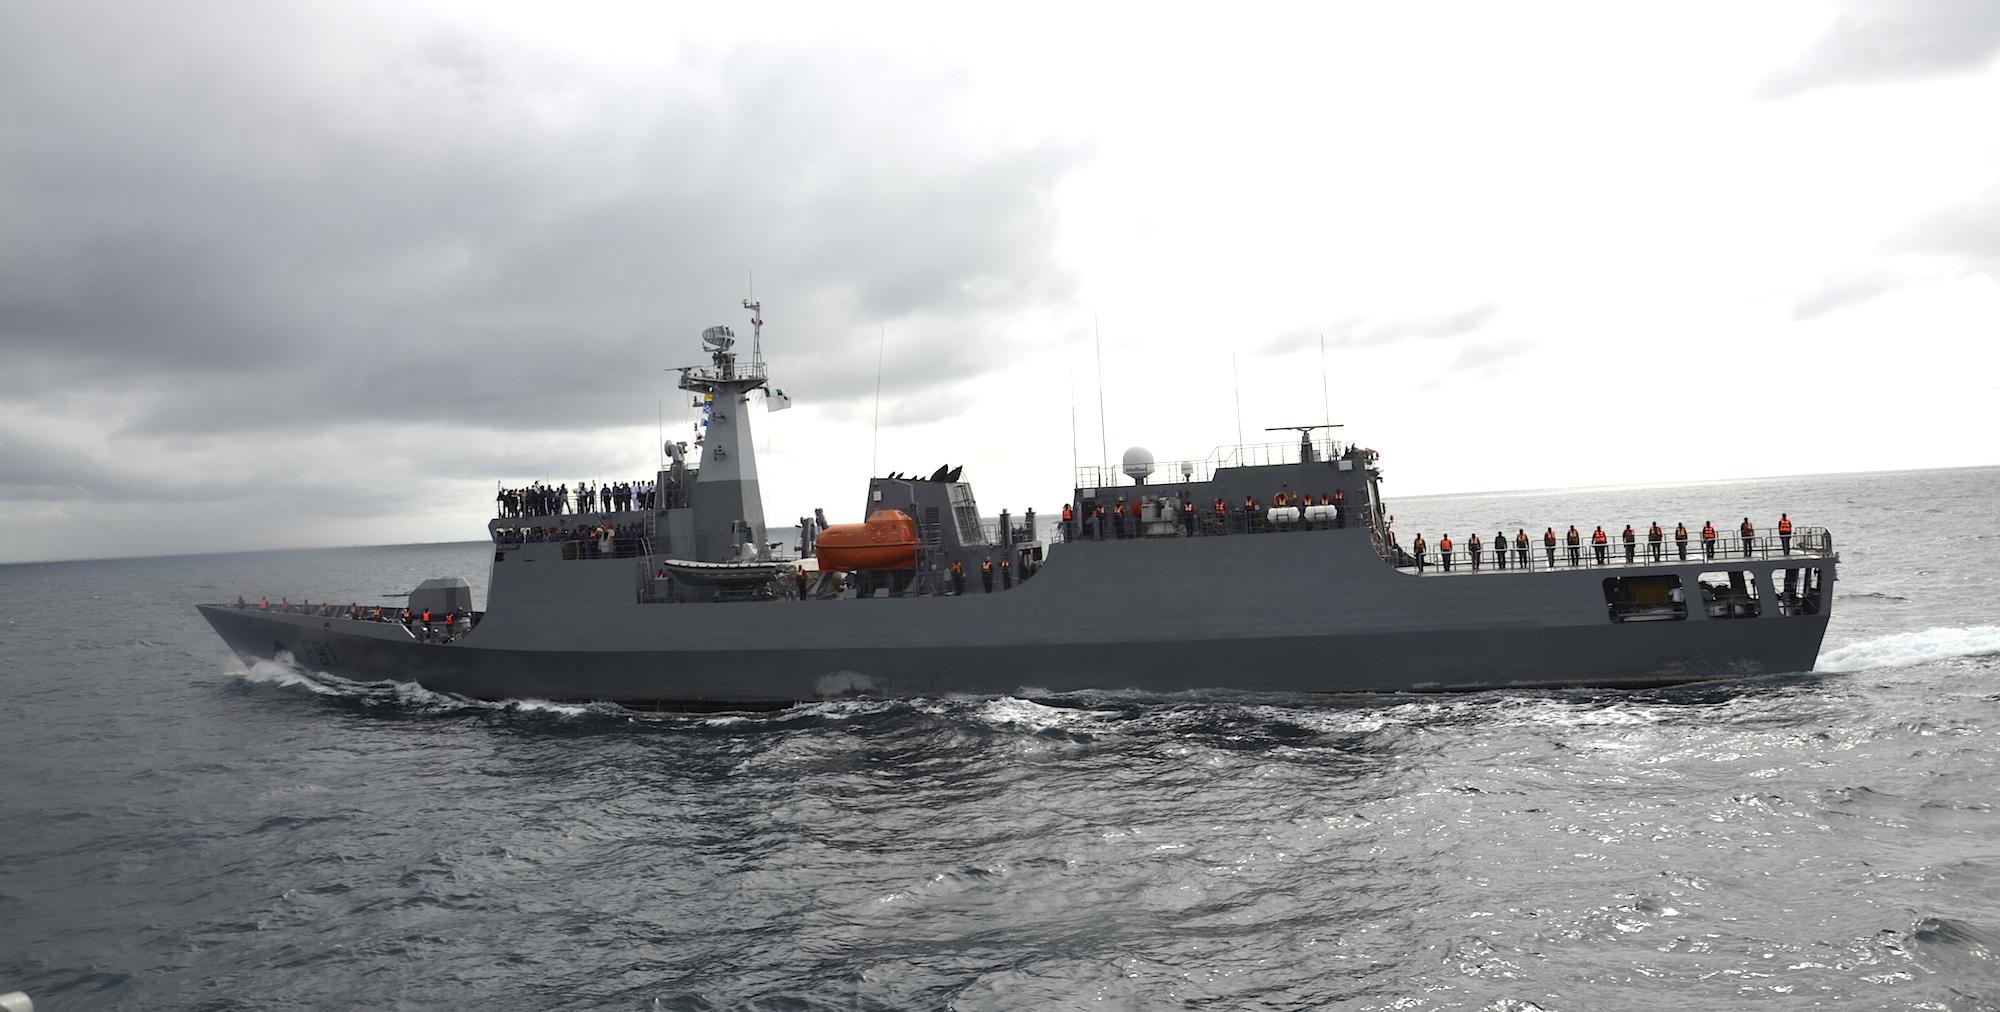 恐怖组织,尼日利亚海军在2012年向我国订购了2艘p18n型近海巡逻舰